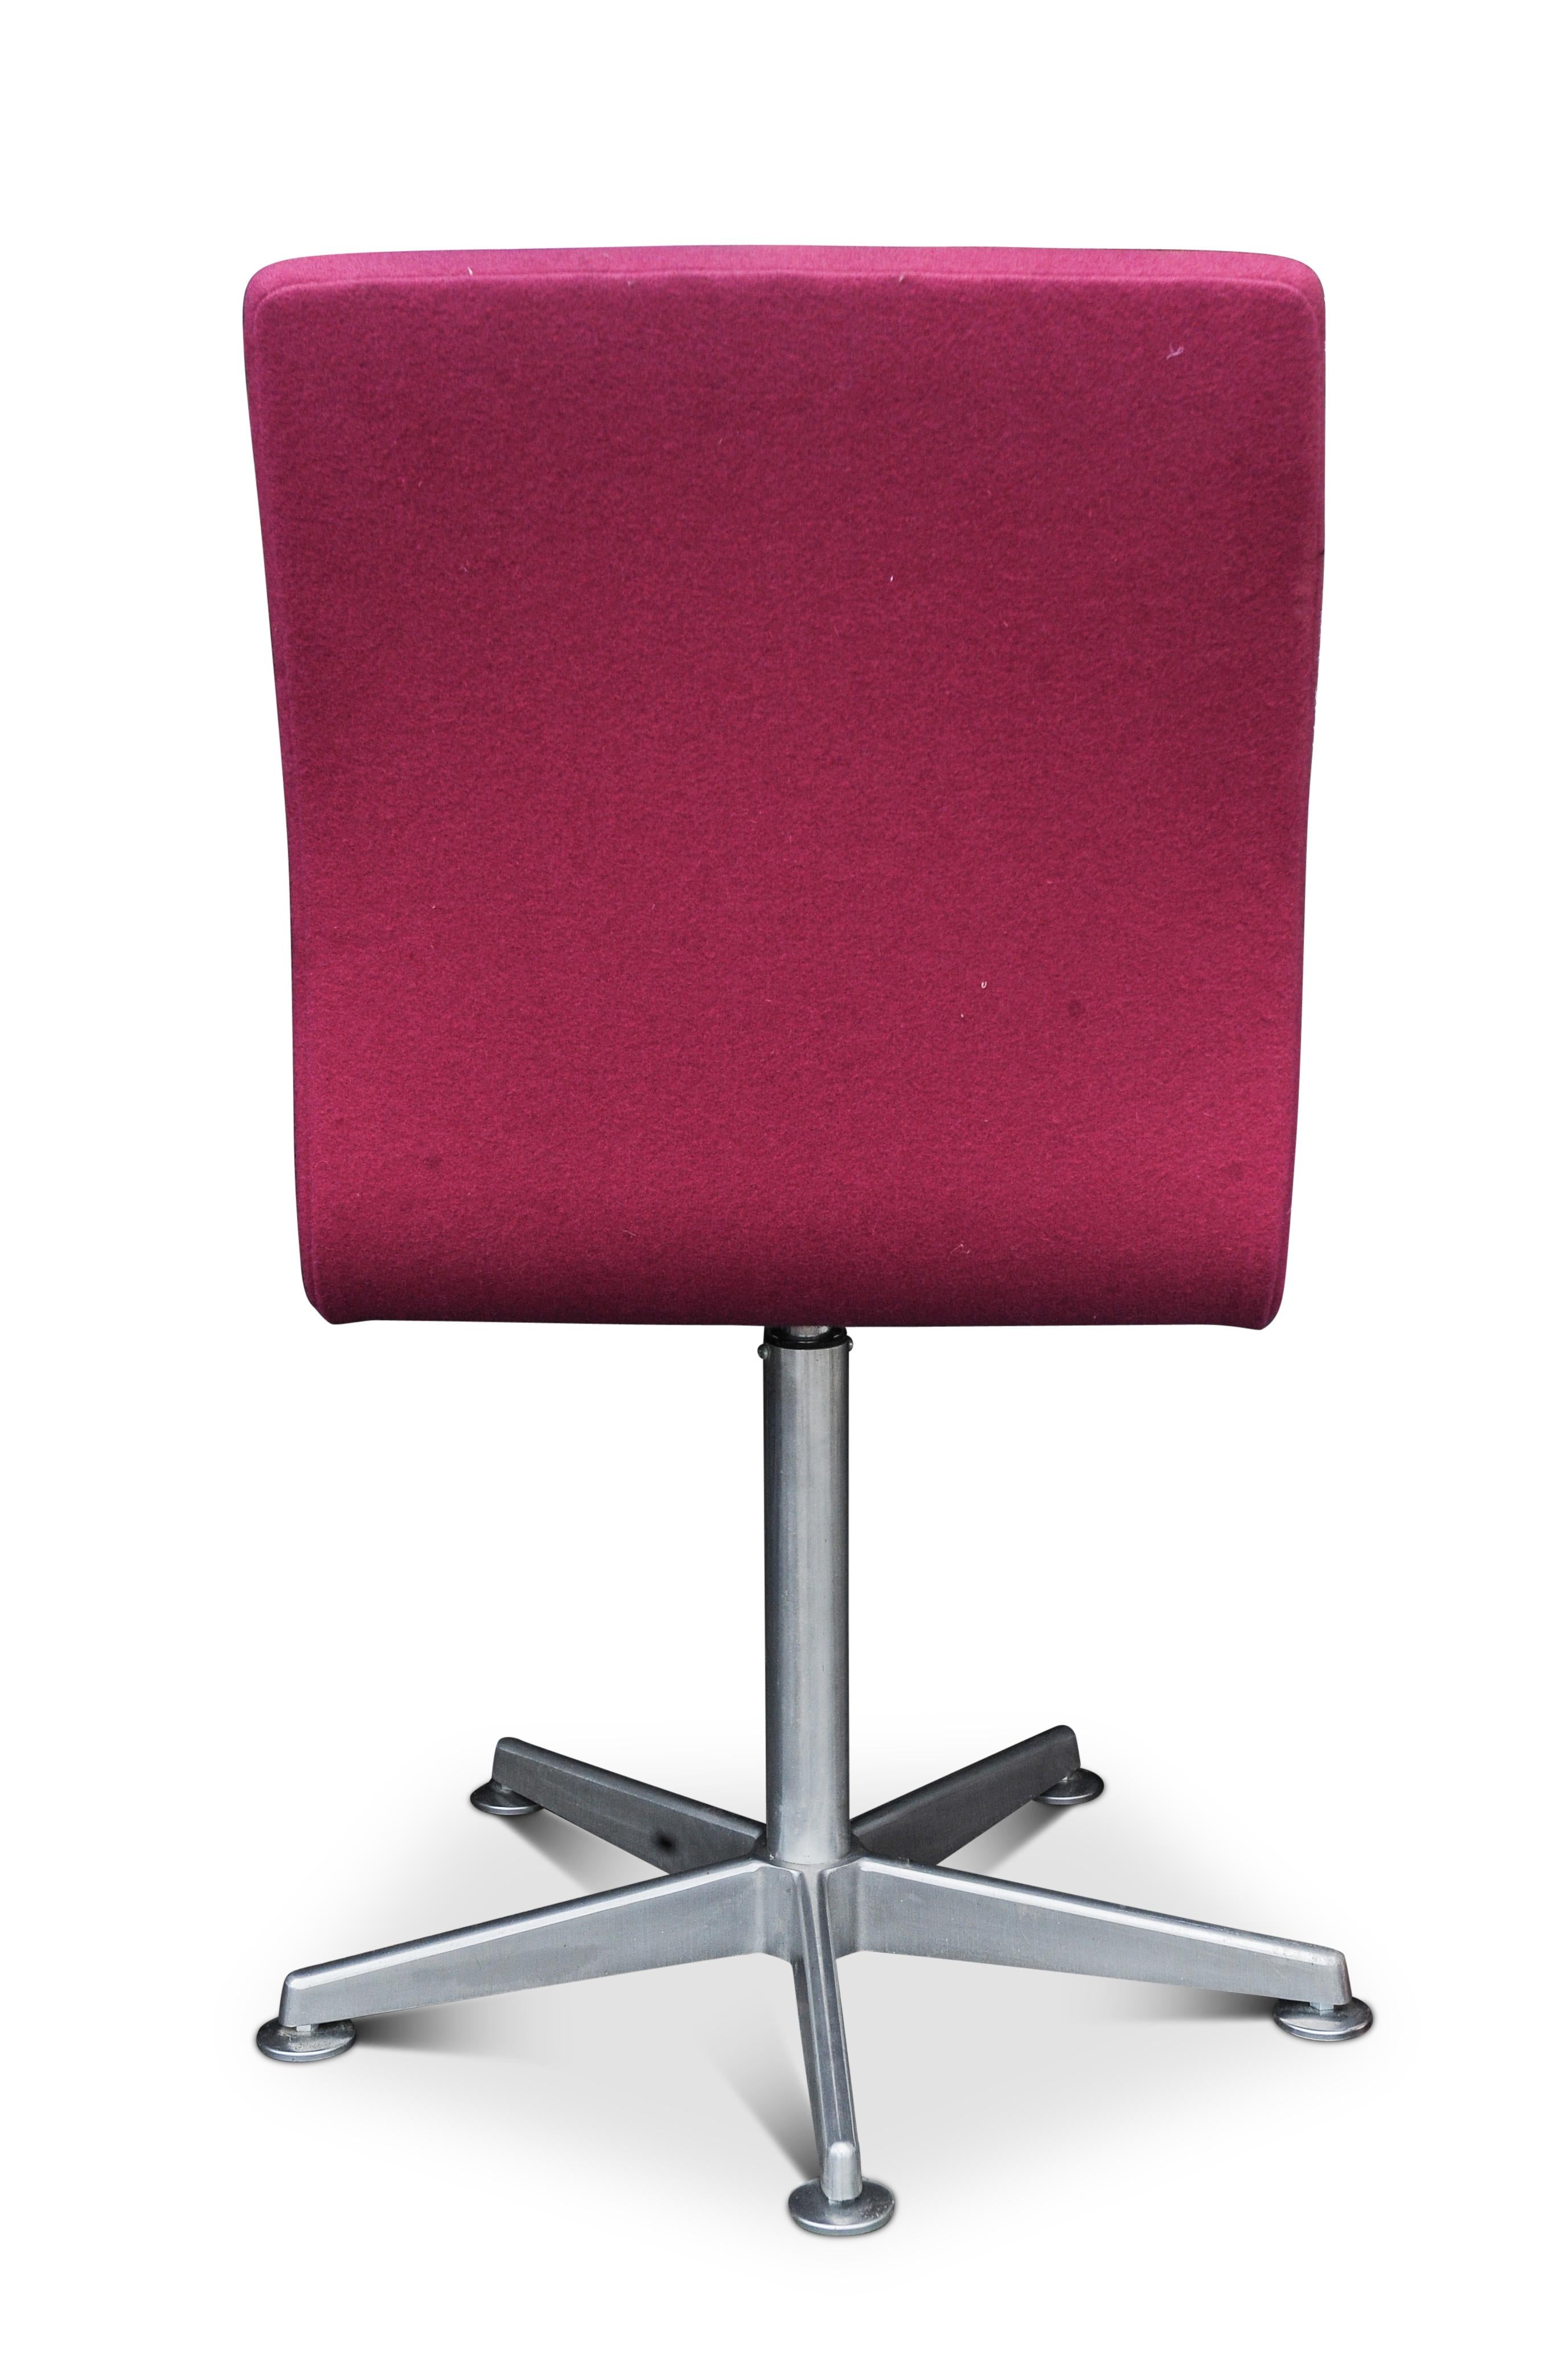 Contemporary Arne Jacobsen Oxford E1107 Pink Upholstered Swivel Chair for Fritz Hansen For Sale